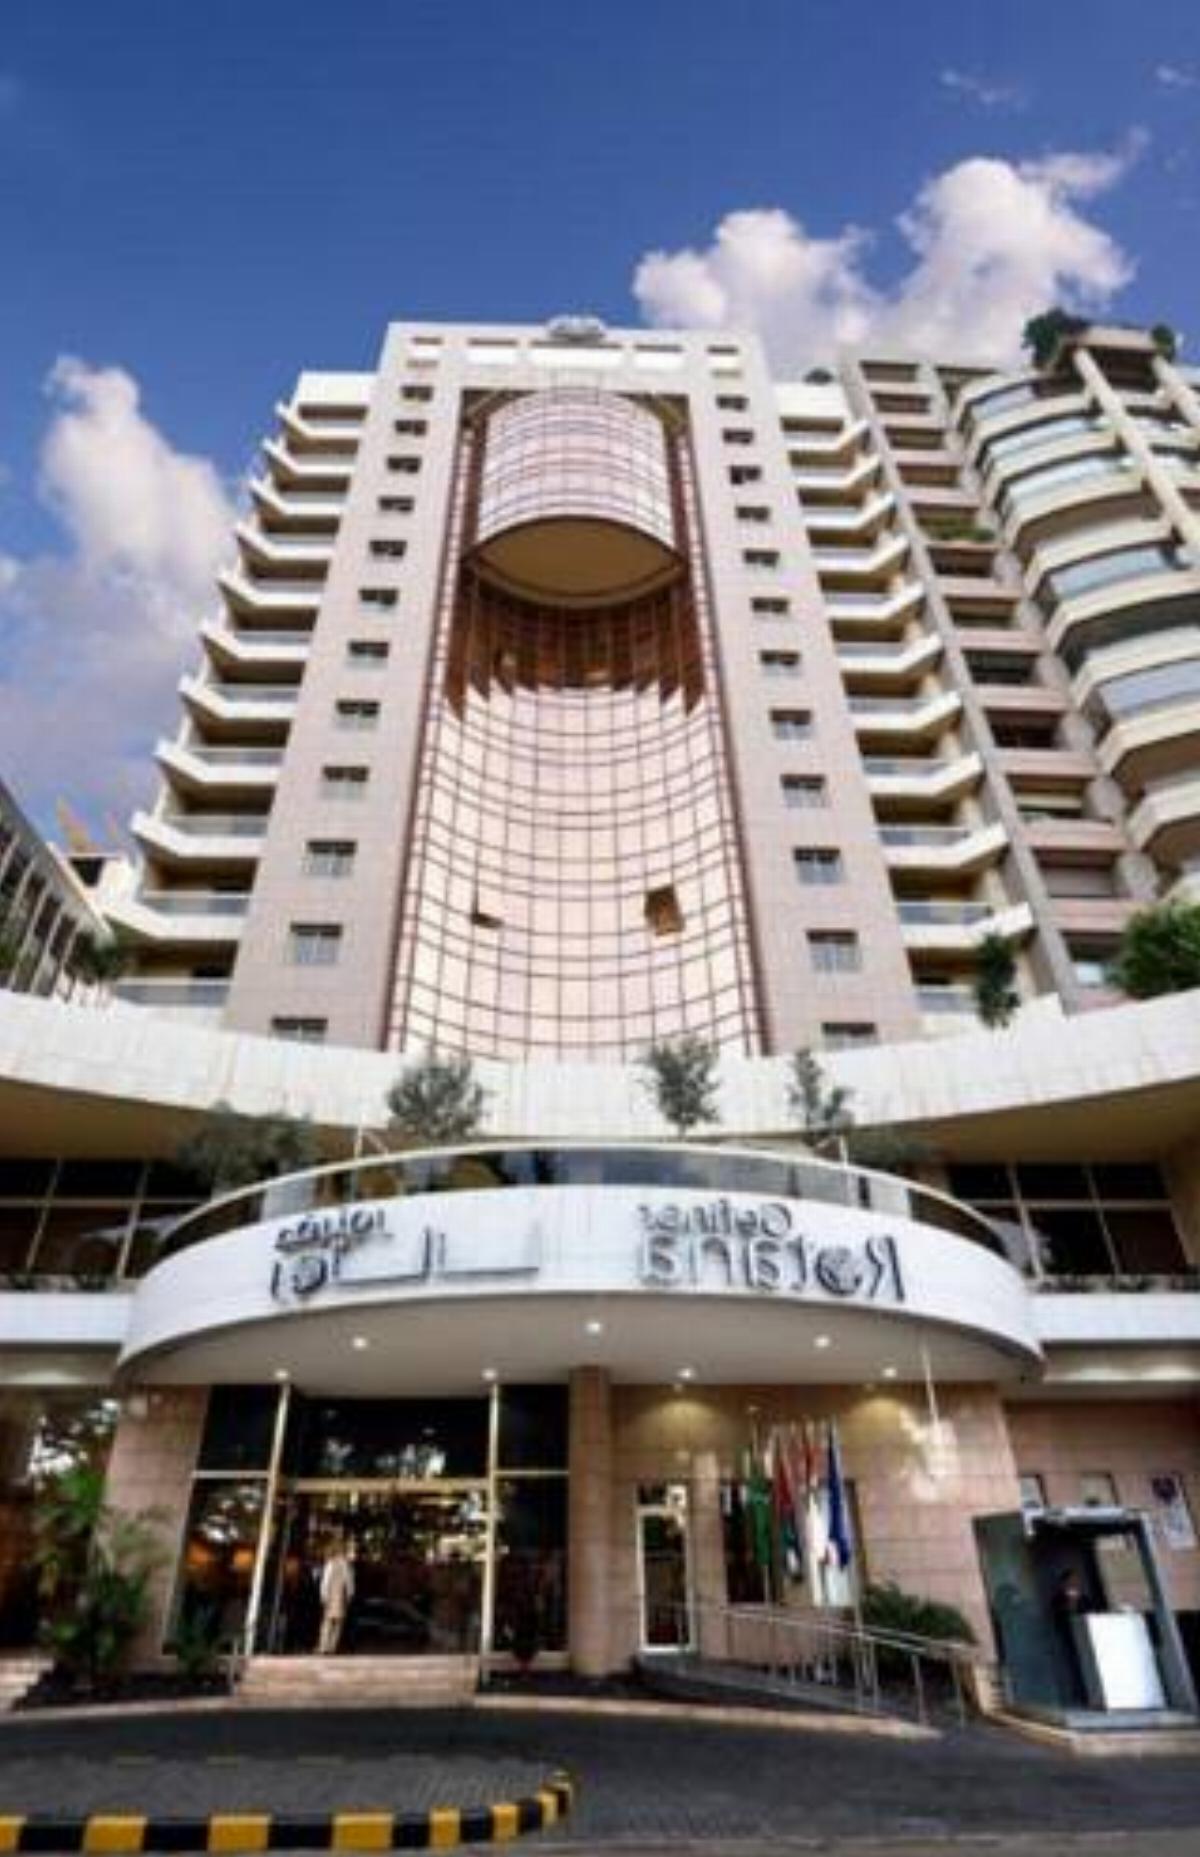 Gefinor Rotana – Beirut Hotel Beirut Lebanon